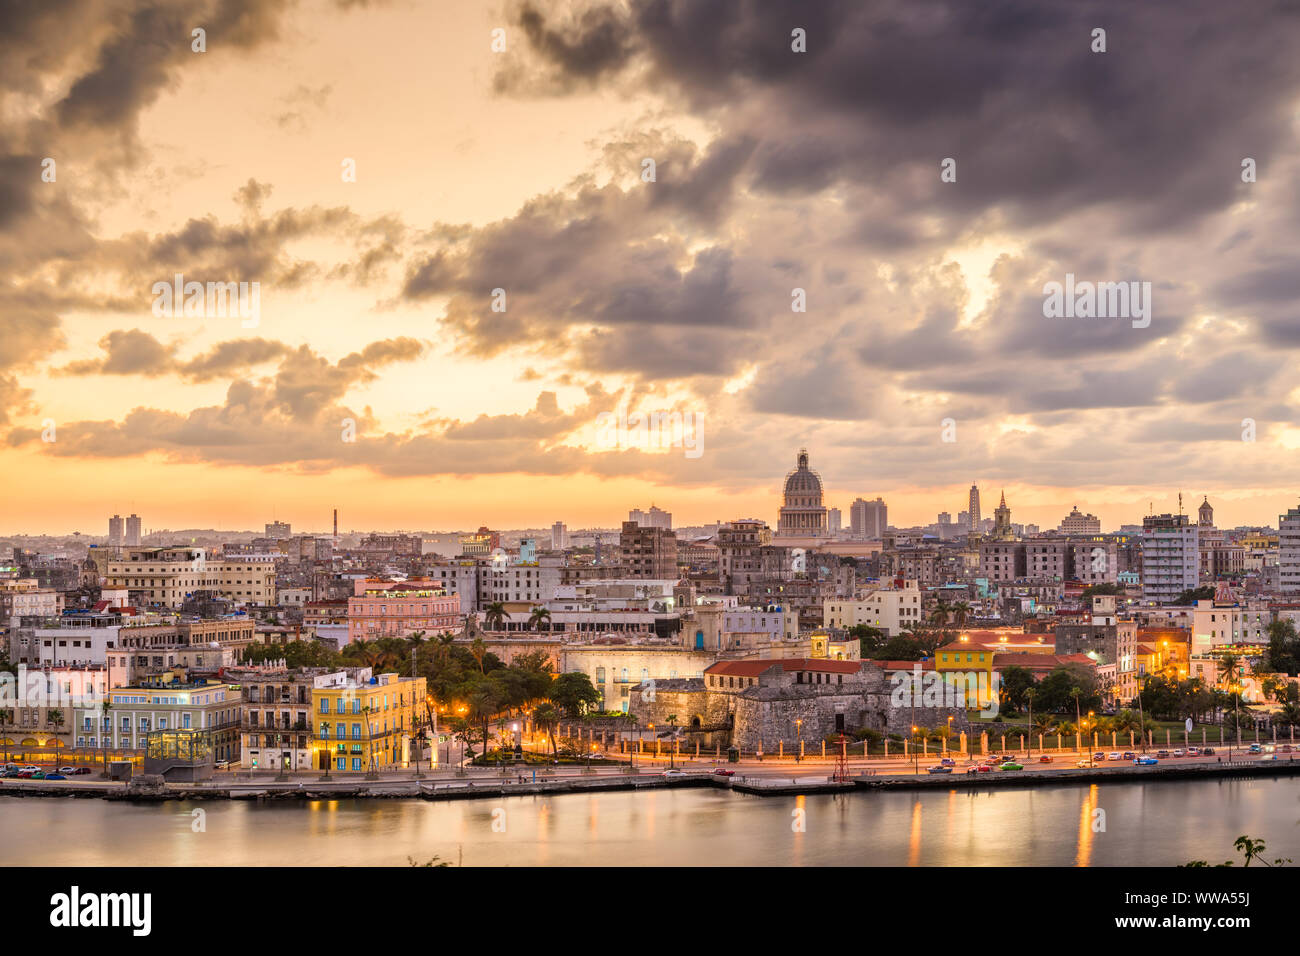 Havana, Cuba downtown skyline at dusk. Stock Photo